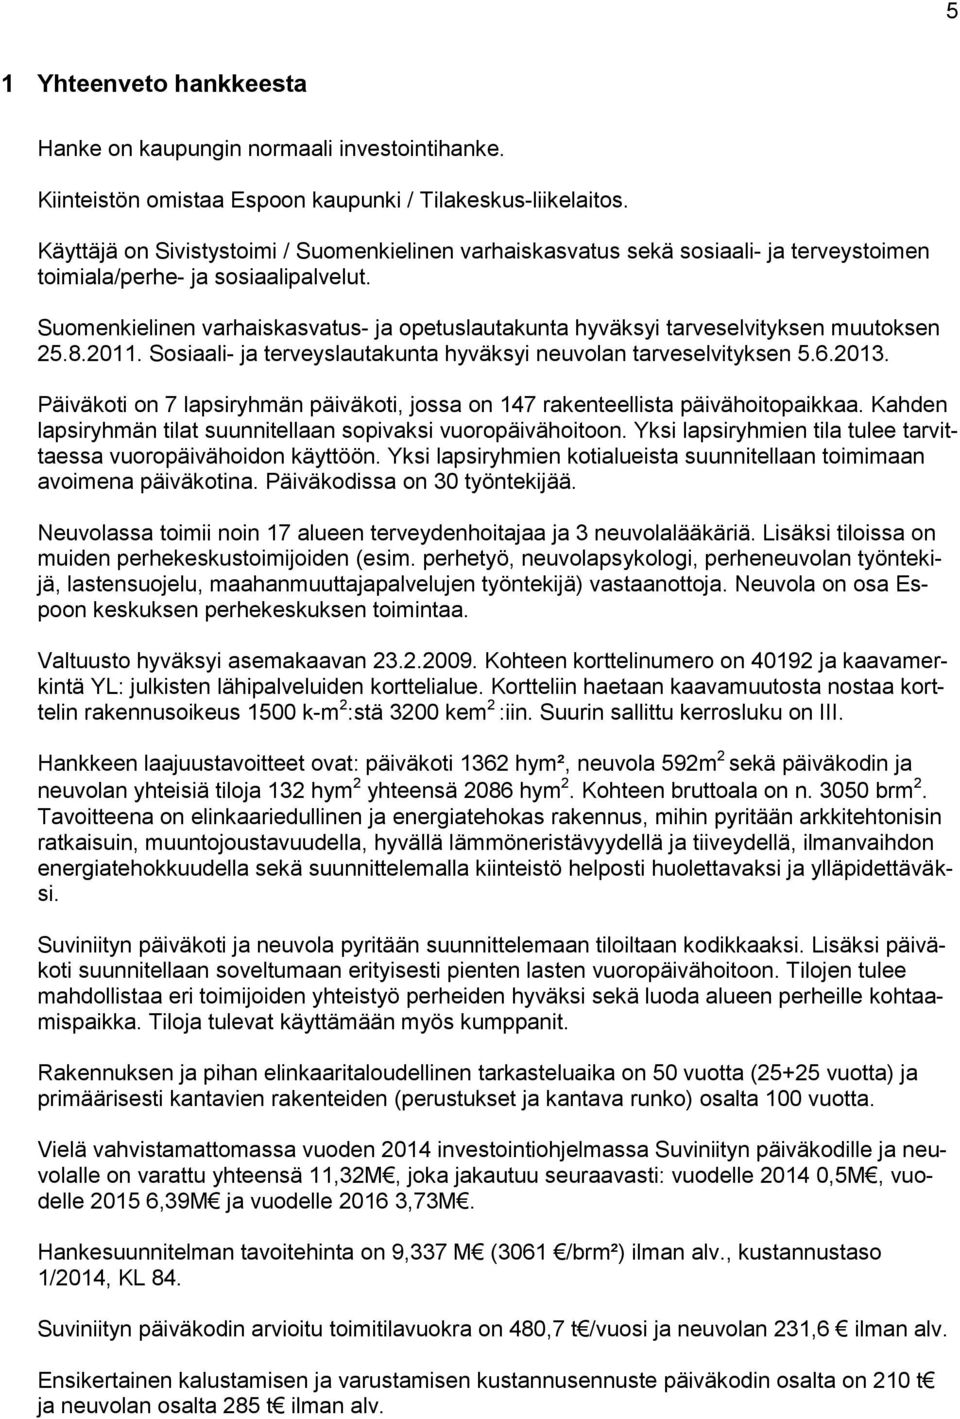 Suomenkielinen varhaiskasvatus- ja opetuslautakunta hyväksyi tarveselvityksen muutoksen 25.8.2011. Sosiaali- ja terveyslautakunta hyväksyi neuvolan tarveselvityksen 5.6.2013.